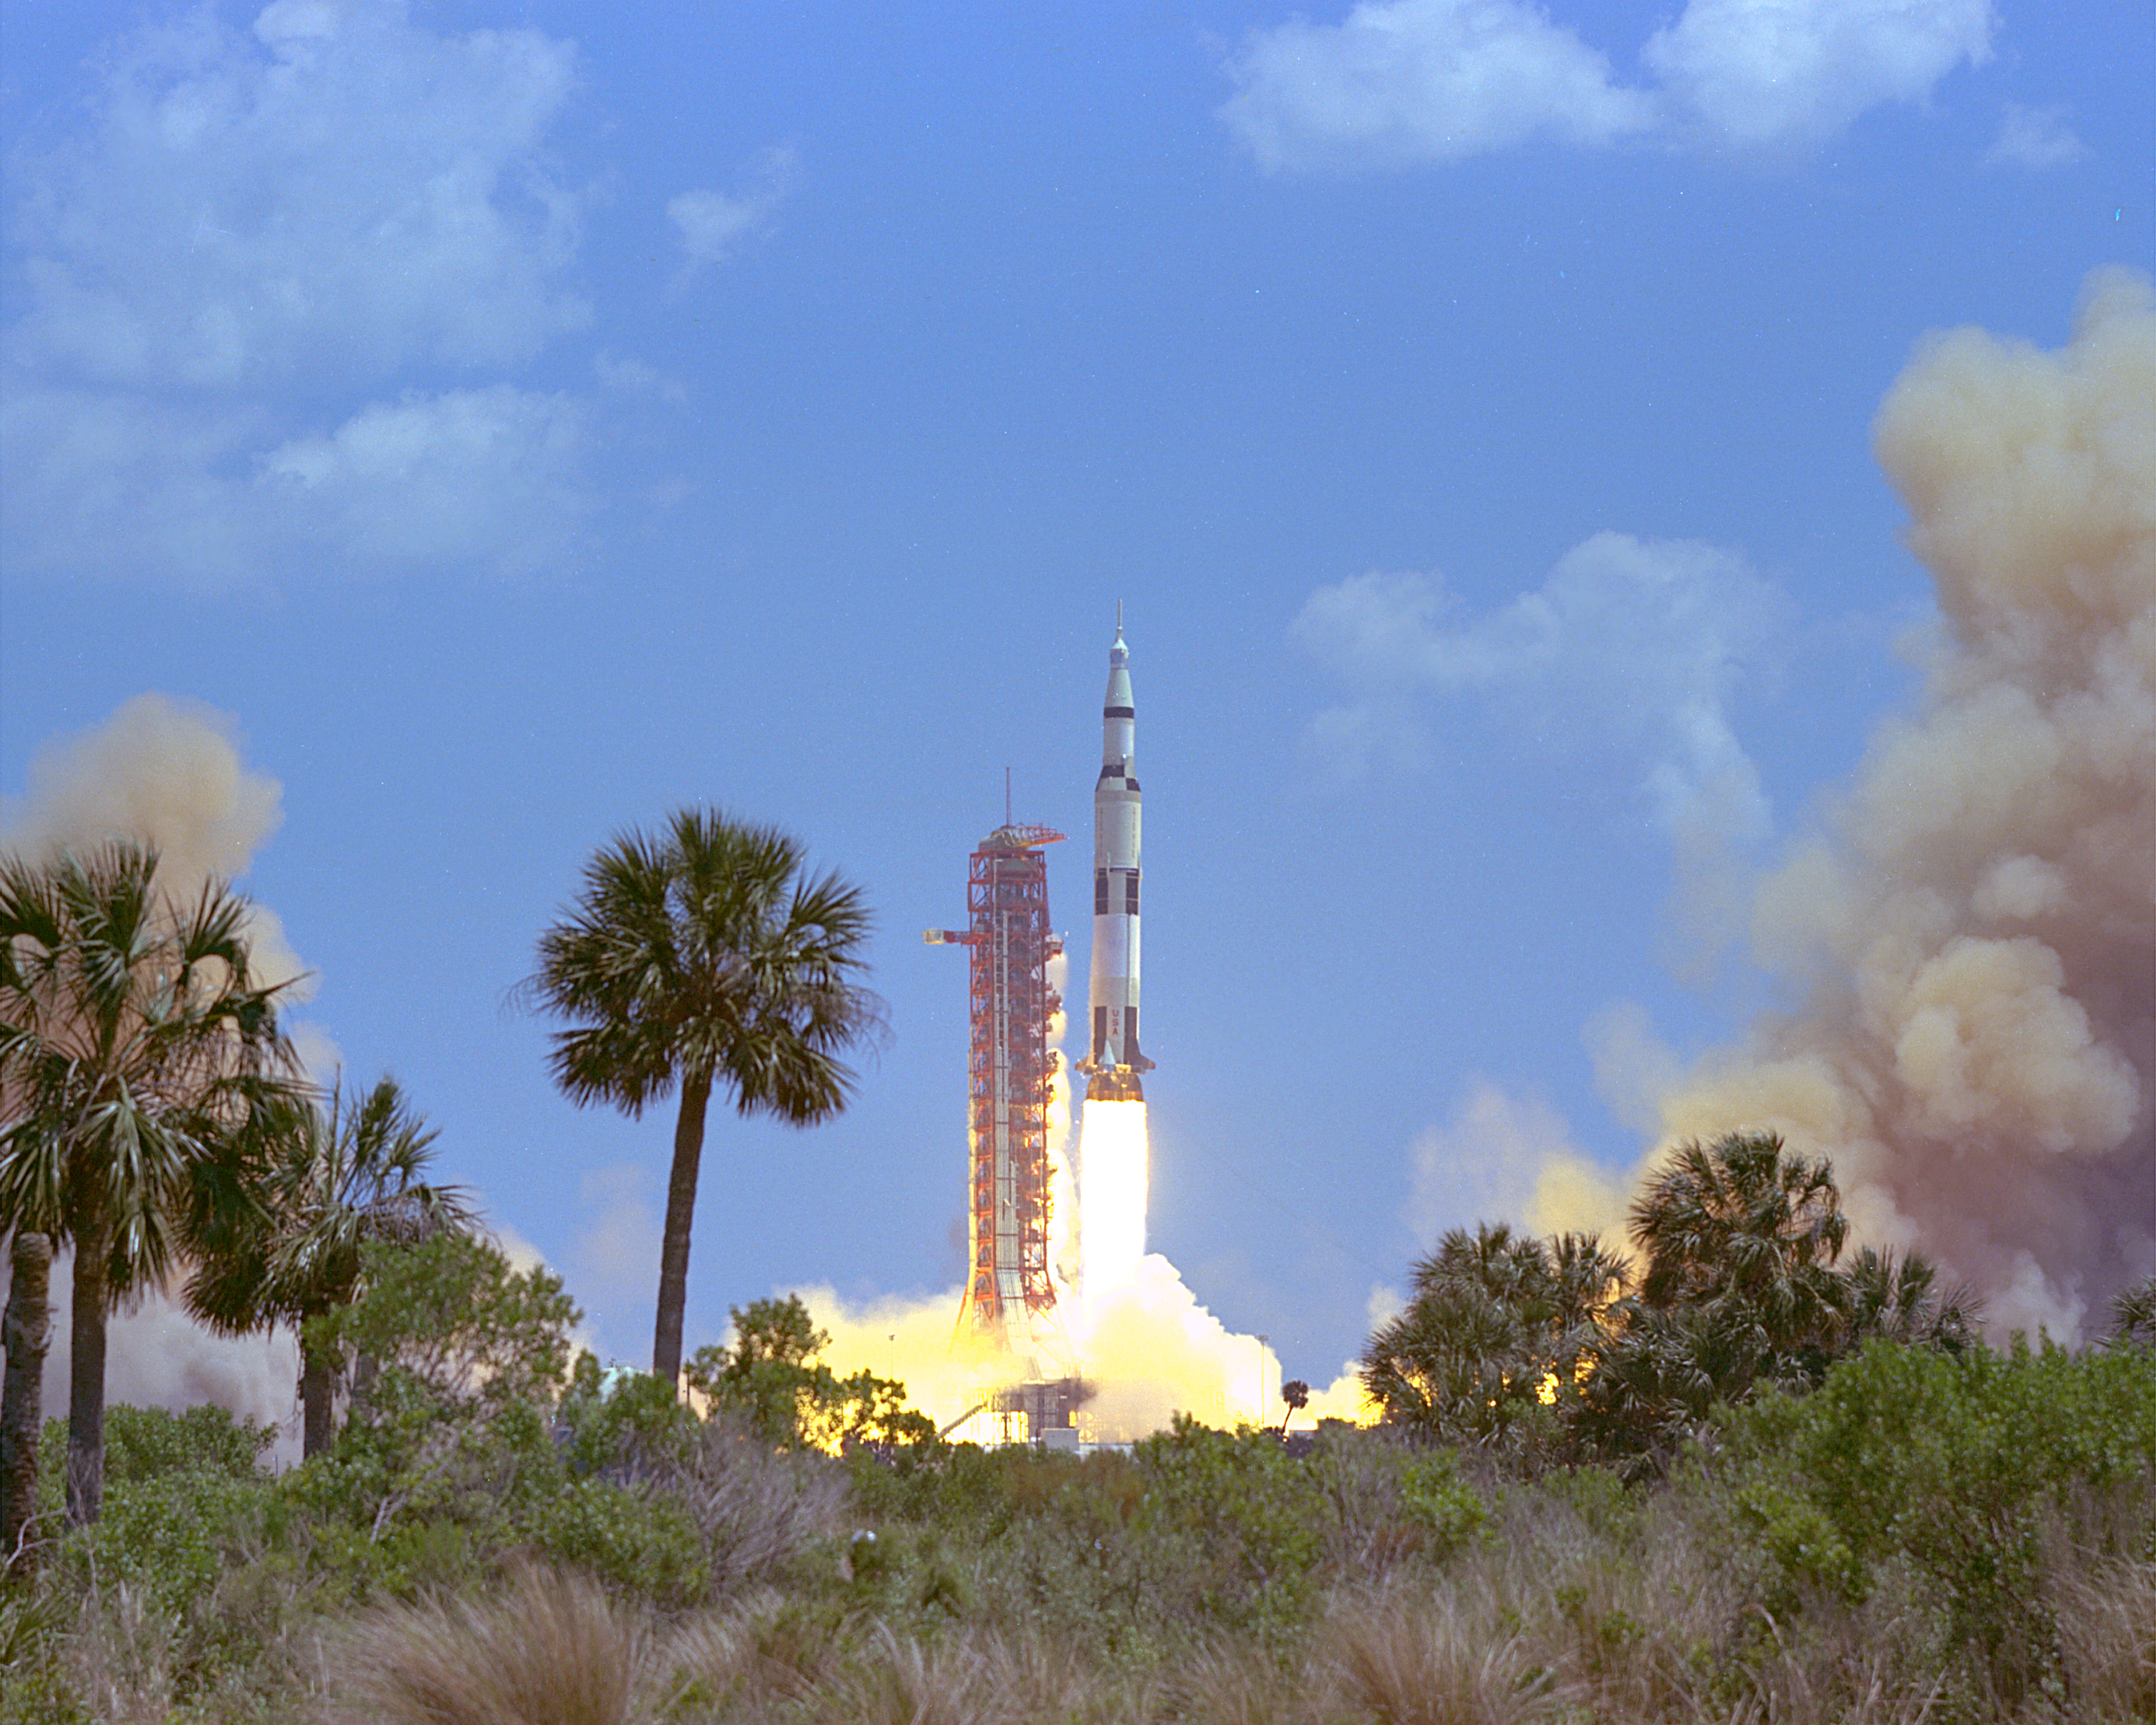 File:Apollo 16 Launch - GPN-2000-000638.jpg - Wikimedia Commons